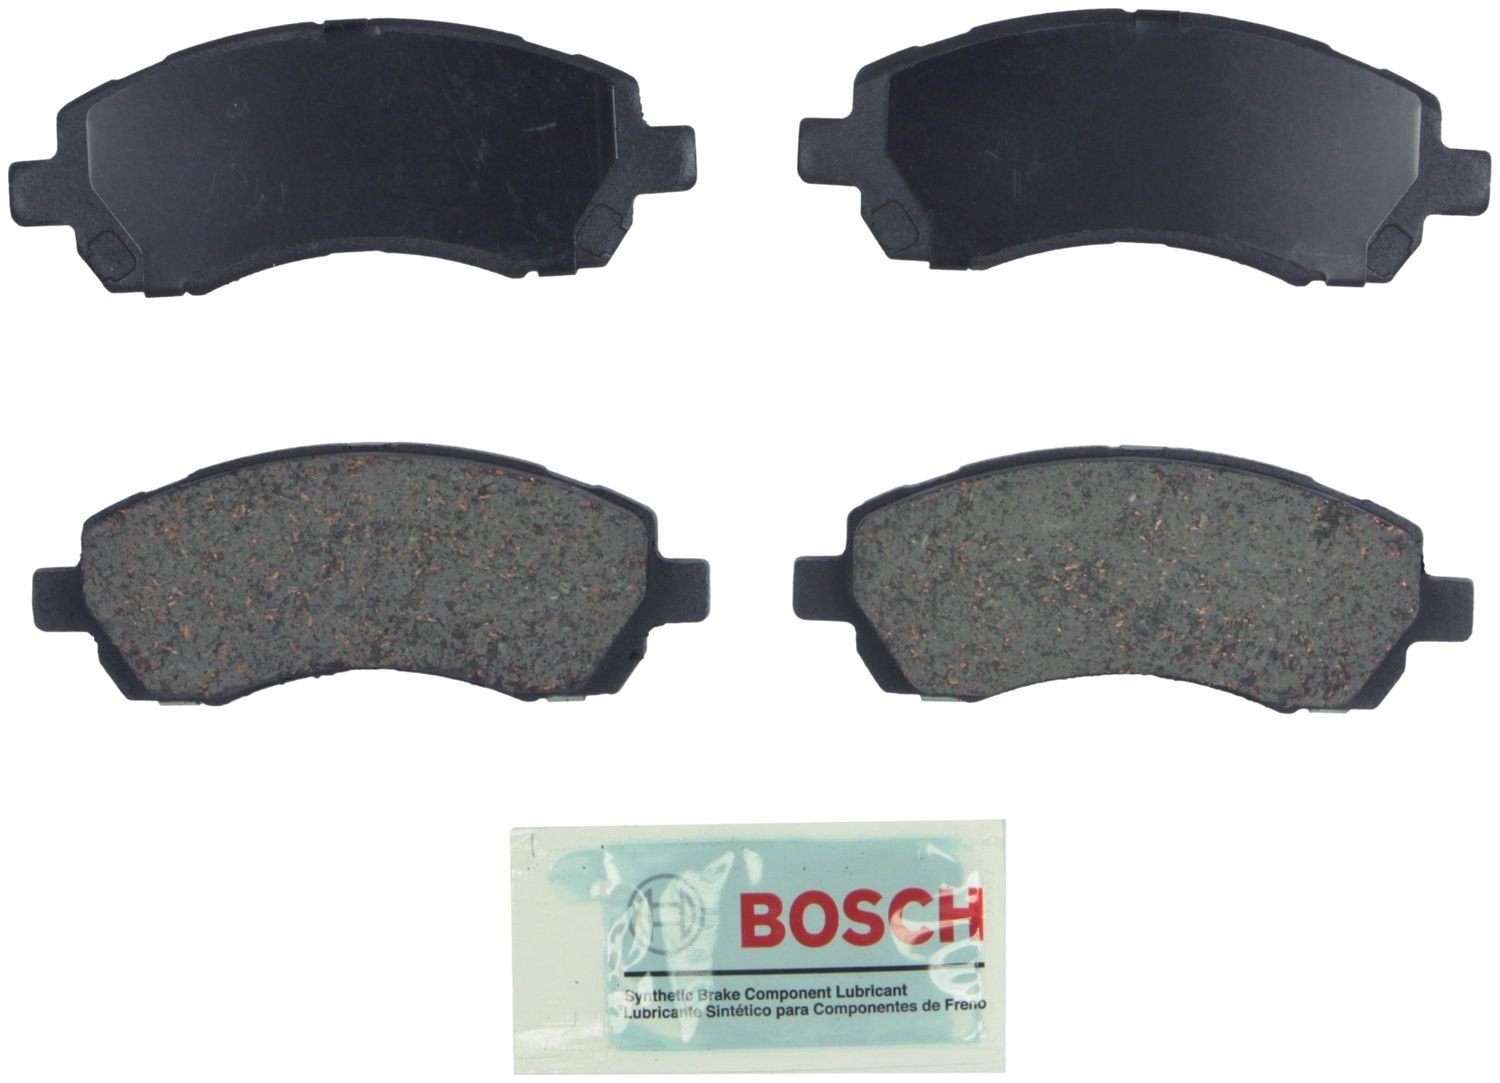 BOSCH BRAKE - Bosch Blue Ceramic Brake Pads (Front) - BQC BE722